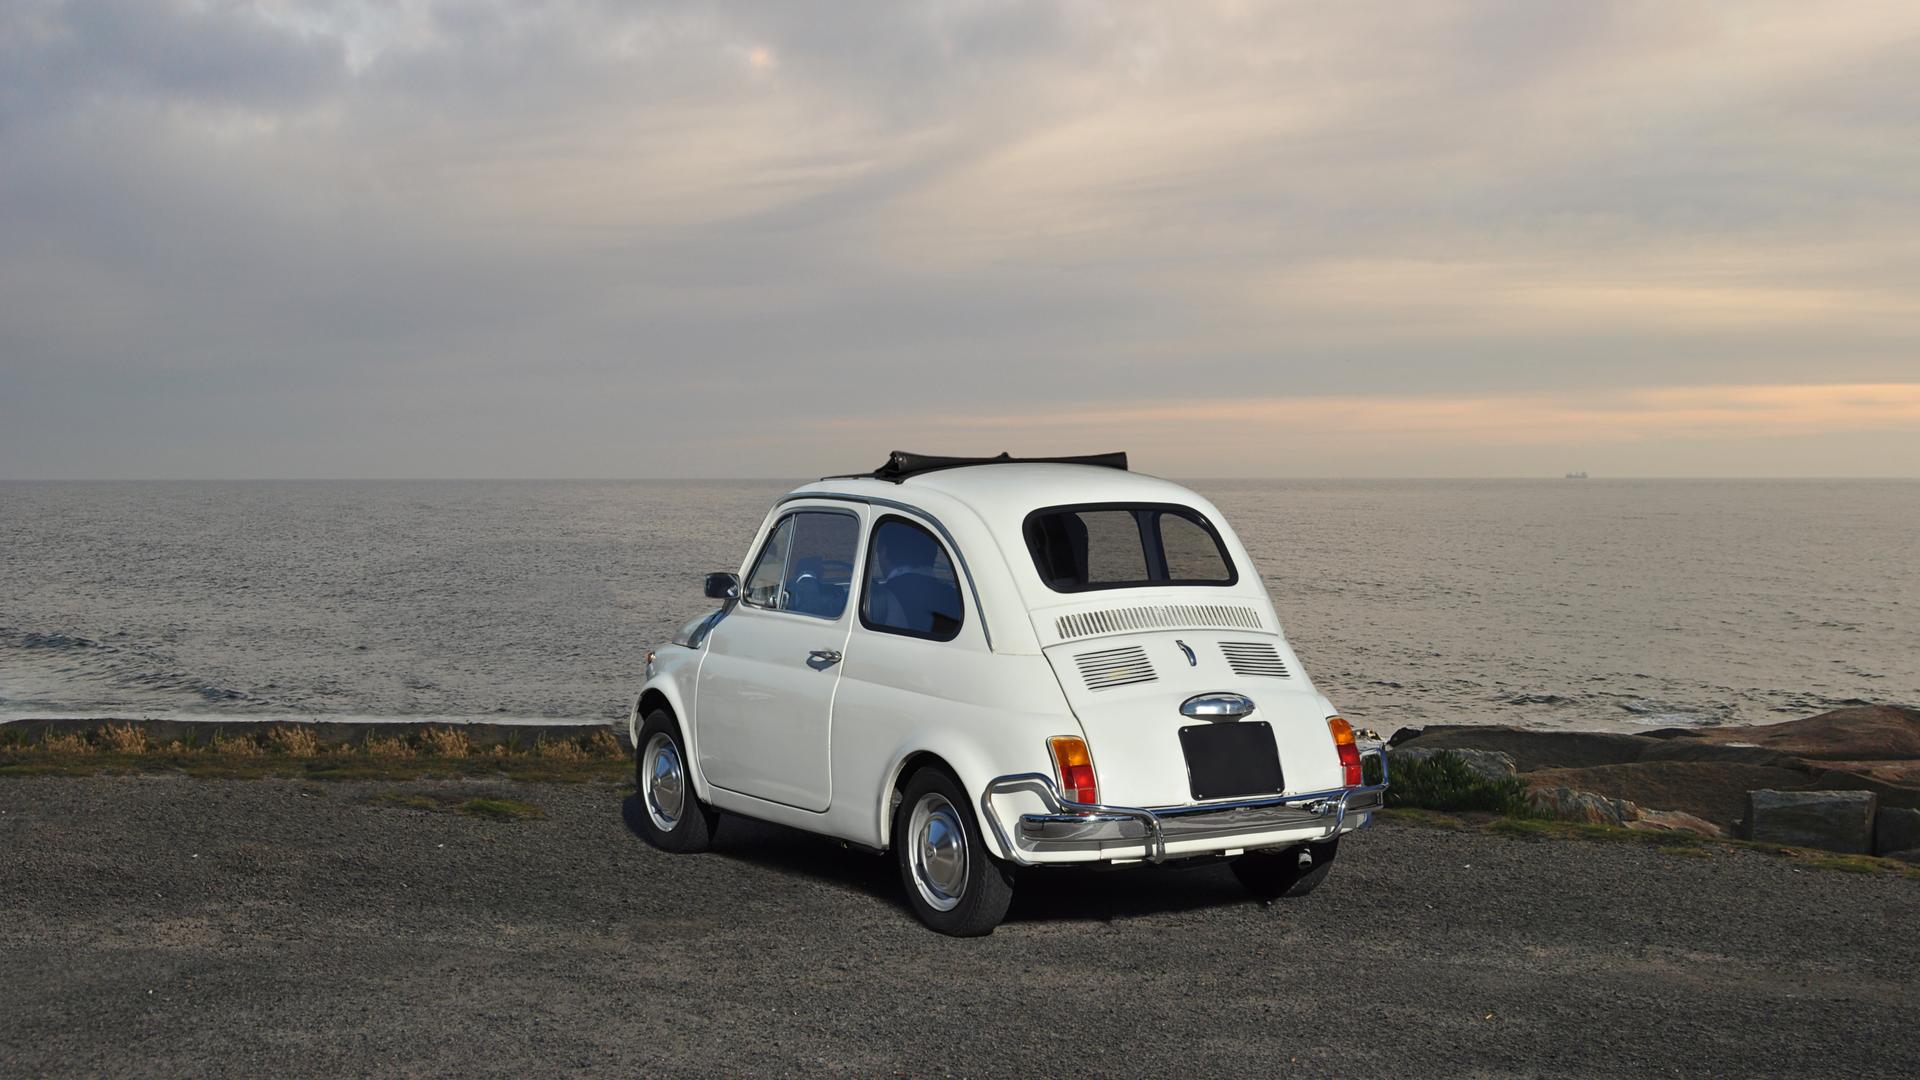 Ein alter, weißer Fiat steht am Meer, der Fahrer sitzt in dem Auto und blickt in Richtung Meer.